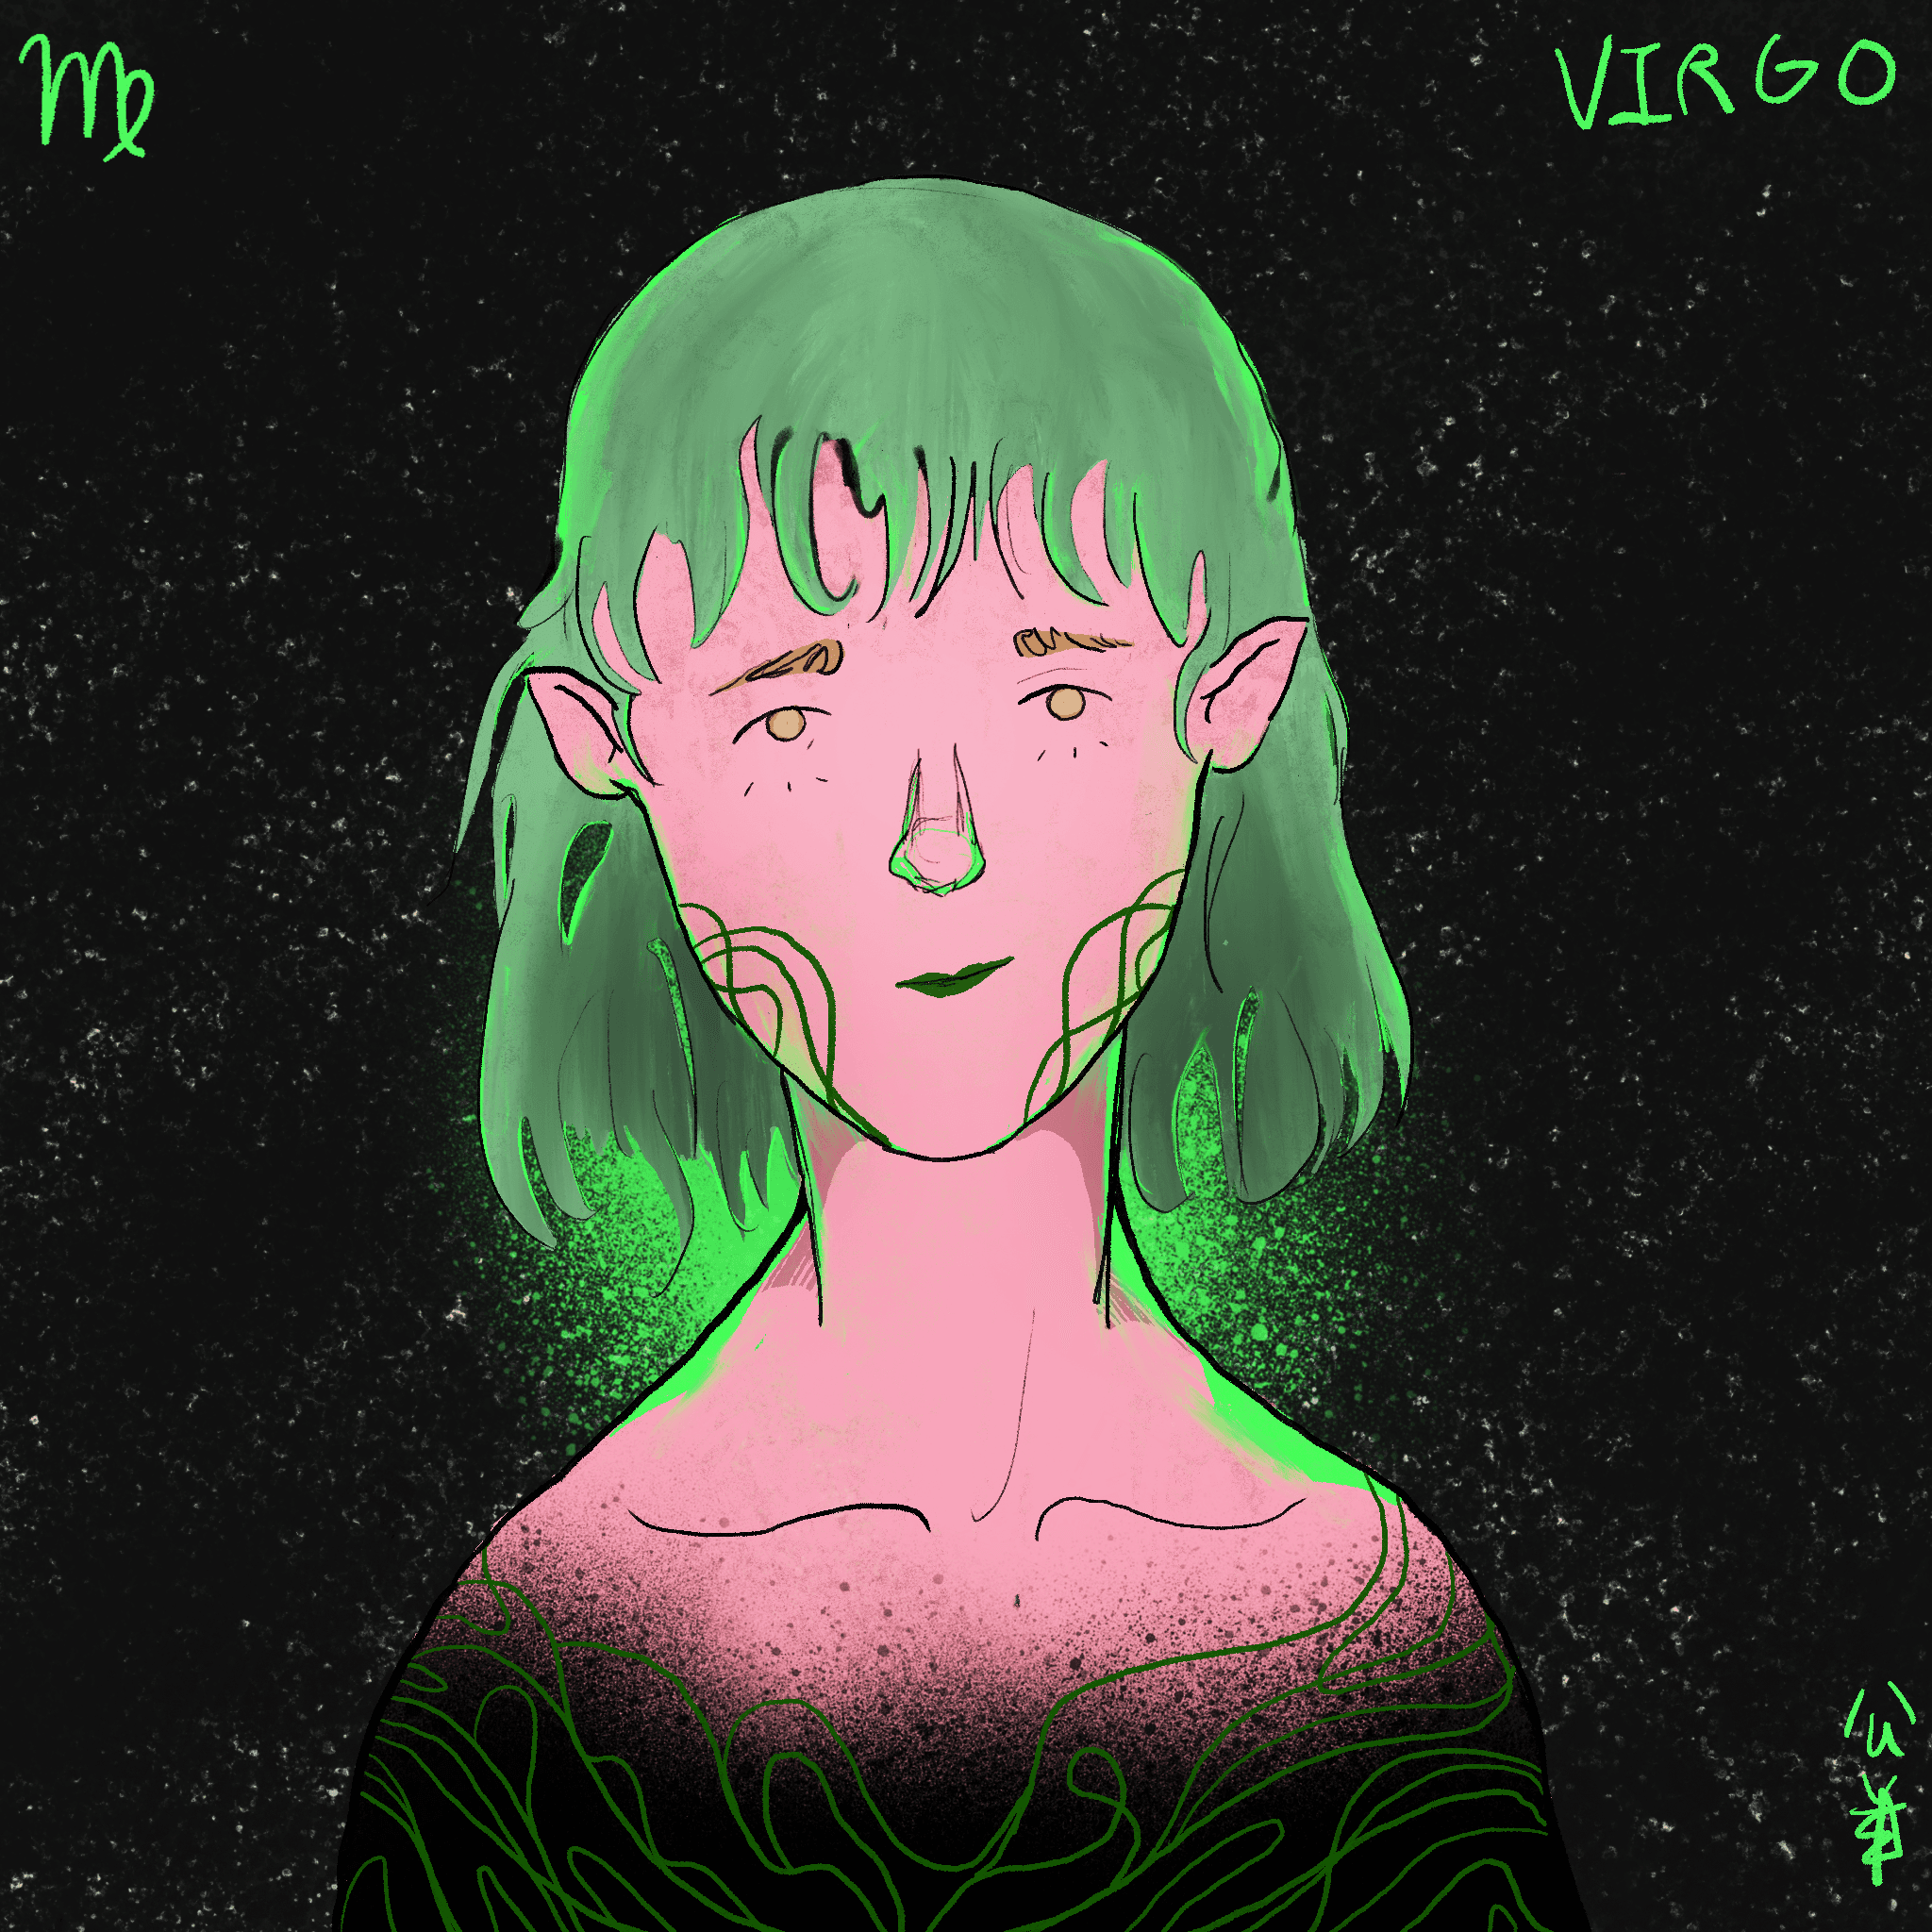 Astro Zxdiac - Virgo